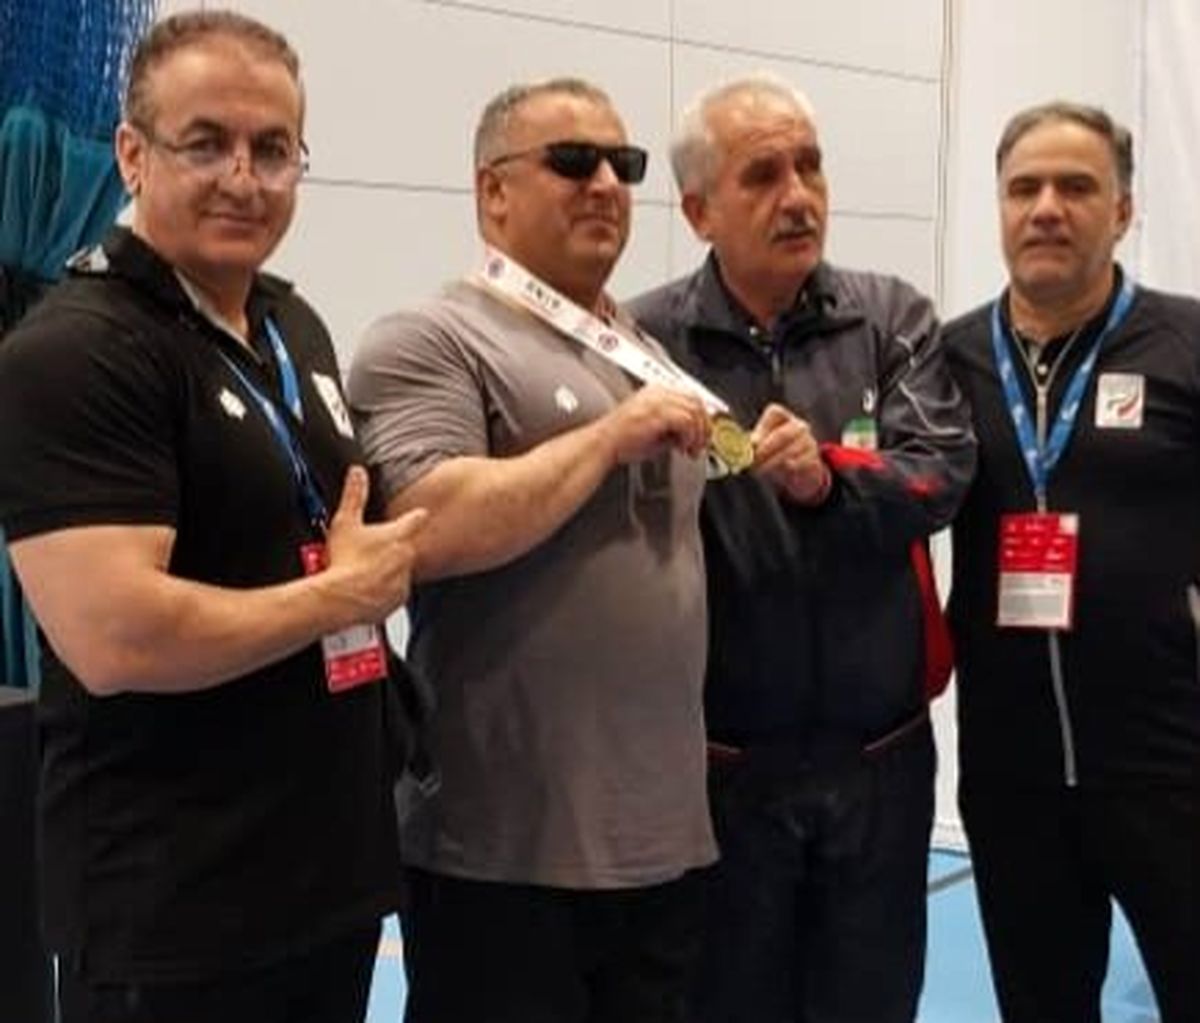 پایان کار نمایندگان پاورلیفتینگ ایران با ۱۲ مدال در قهرمانی جهان

